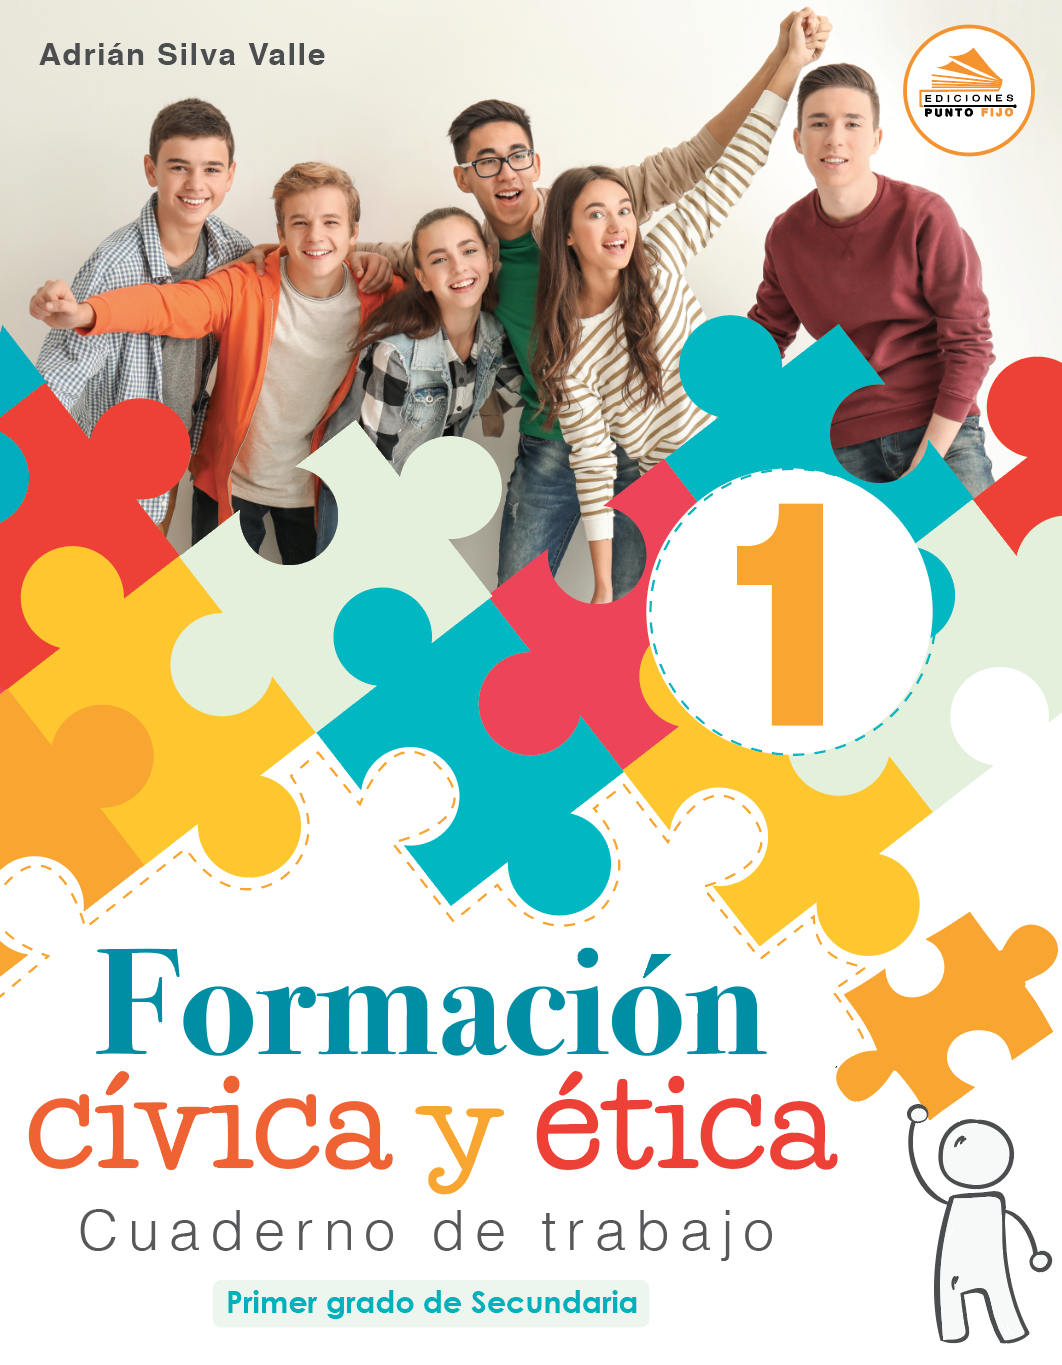 Imagenes De Formacion Civica Y Etica